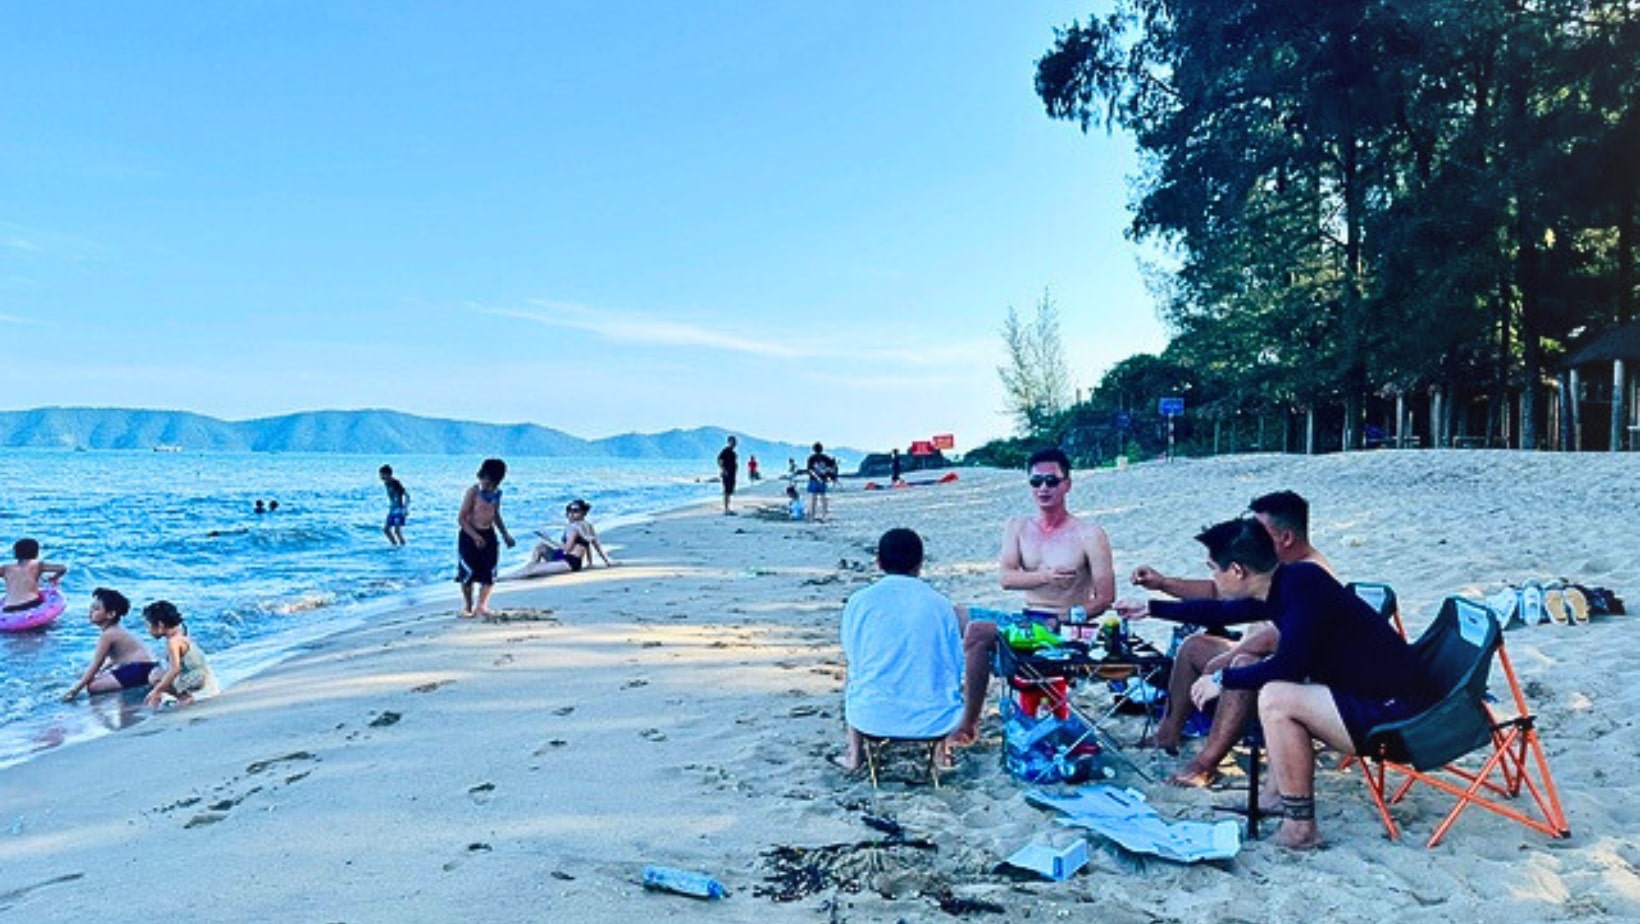 Khám phá Bãi biển Đá Đen - Tắm biển Móng Cái, tỉnh Quảng Ninh 